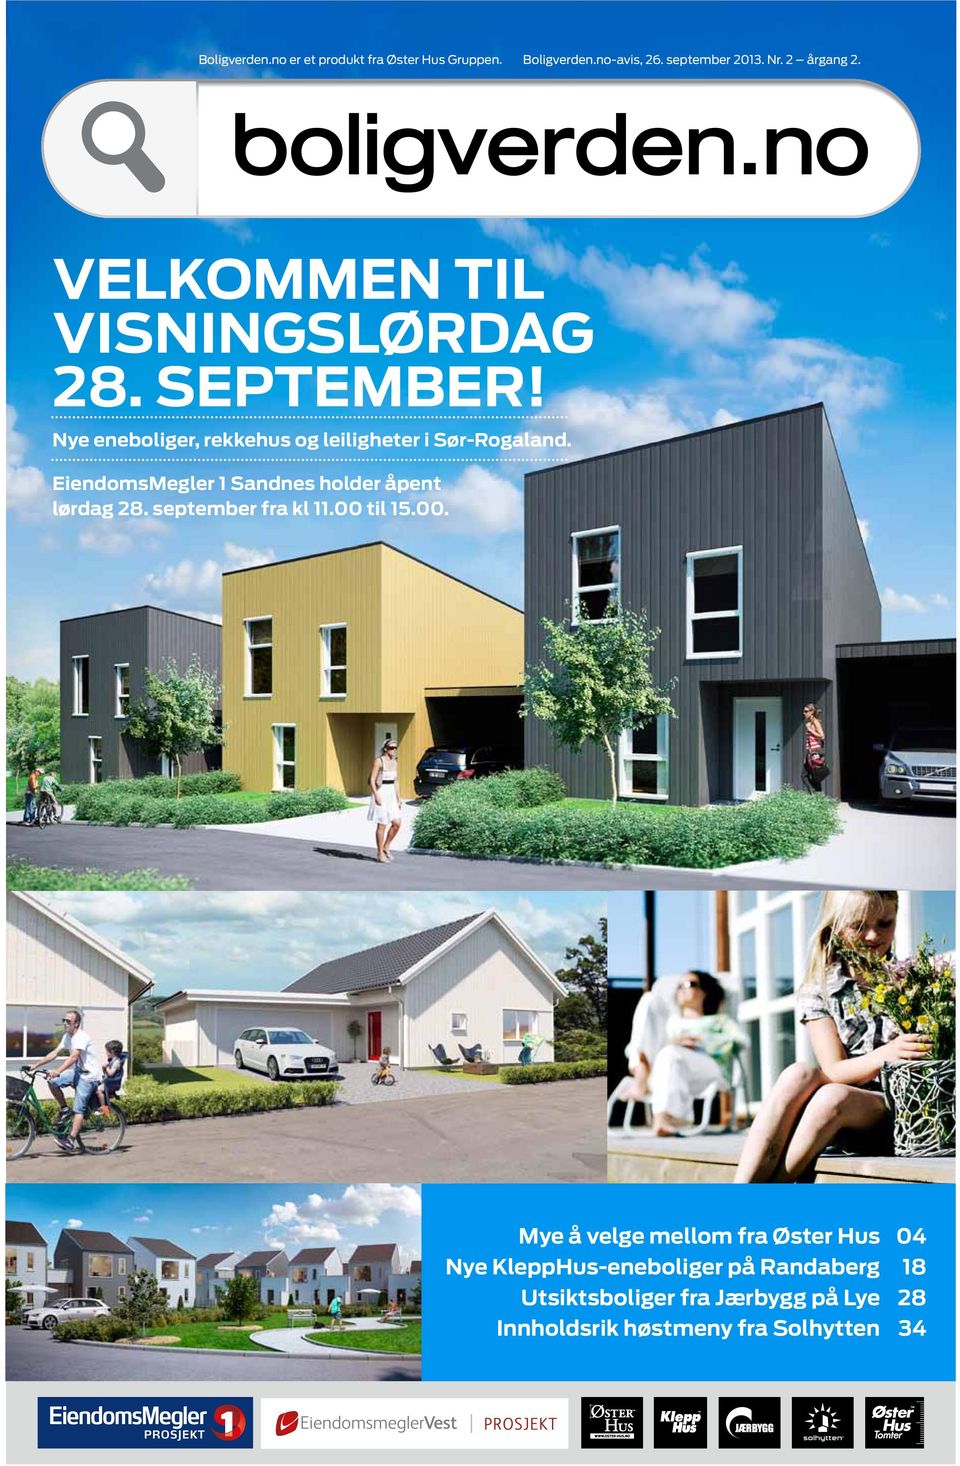 EiendomsMegler 1 Sandnes holder åpent lørdag 28. september fra kl 11.00 